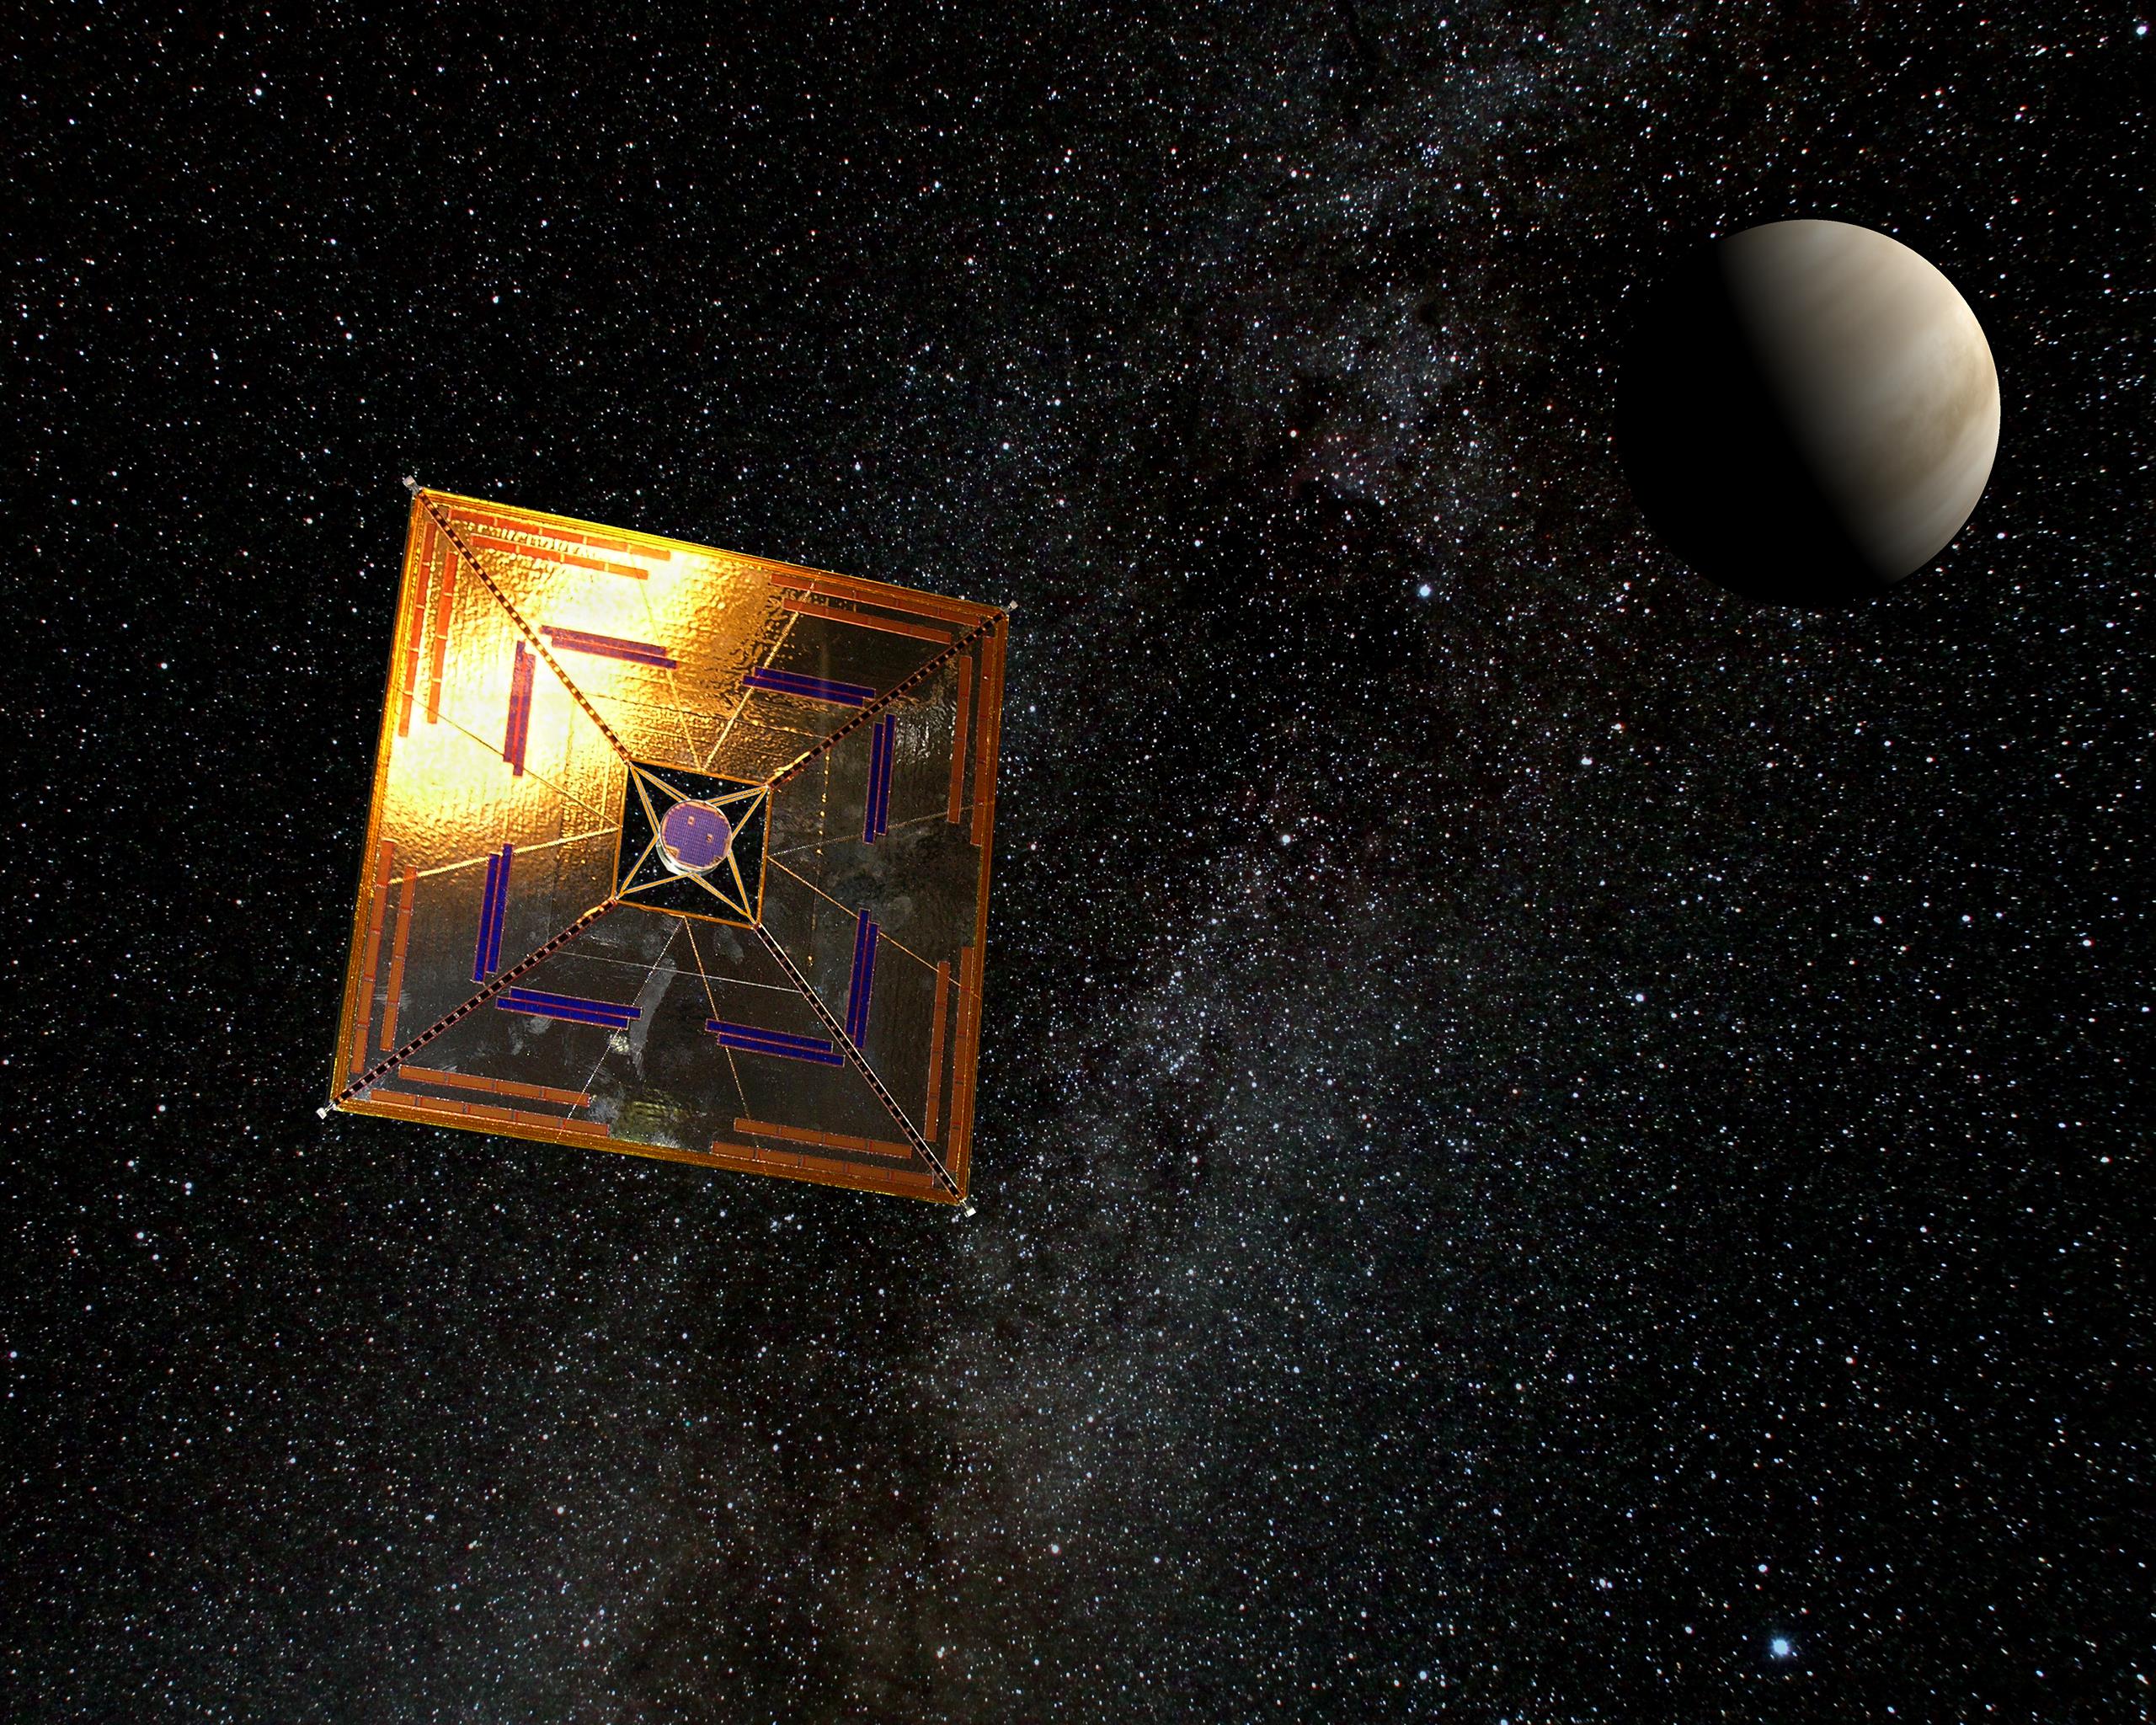 [Translate to English:] En kunstners illustration af IKAROS rumsonden. IKAROS er en rumsonde, der anvender et solsejl som drivkraft i rummet, fremfor de konventionelle brændstofs raketter.